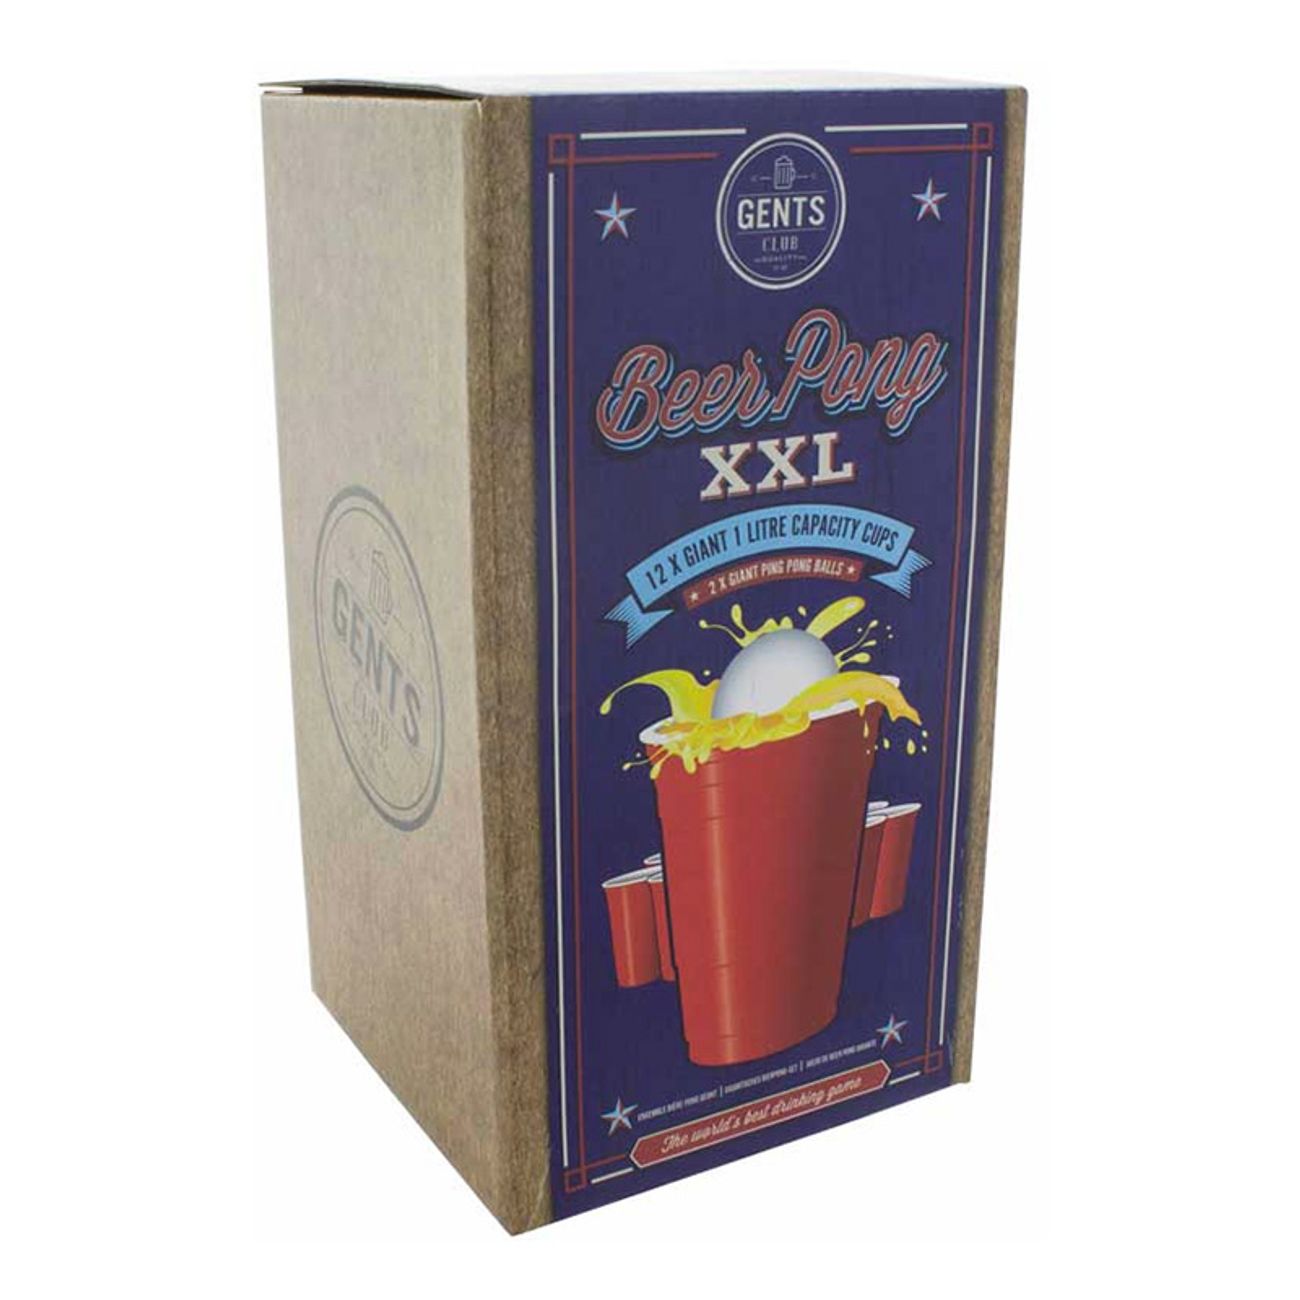 beer-pong-xxl-3